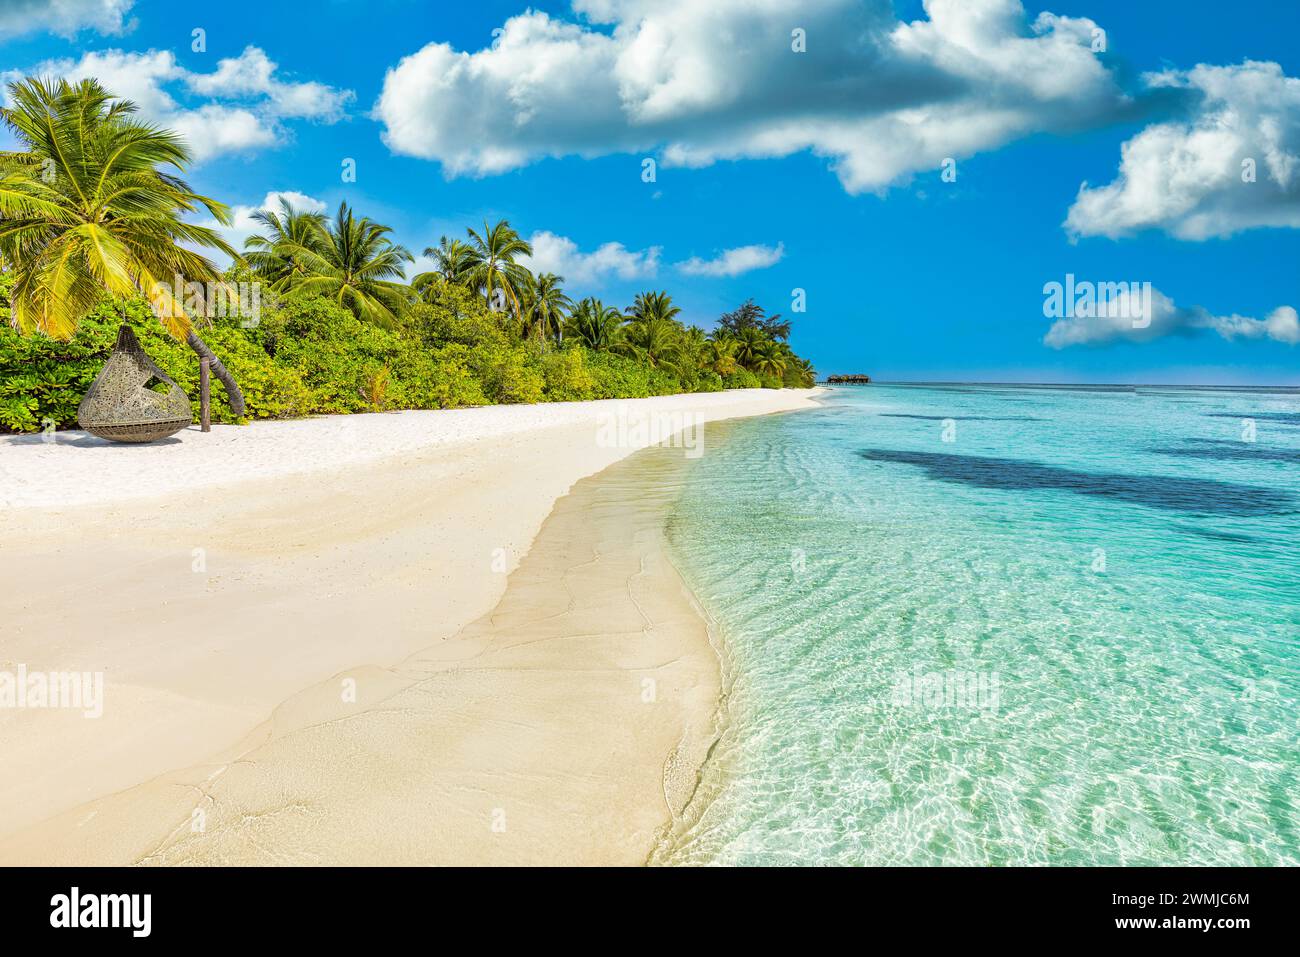 Magnifique paysage de plage d'été. Côte exotique de l'île avec des palmiers et du sable blanc à proximité de la mer bleue étonnante et du lagon. Paradis de la nature tropicale Banque D'Images